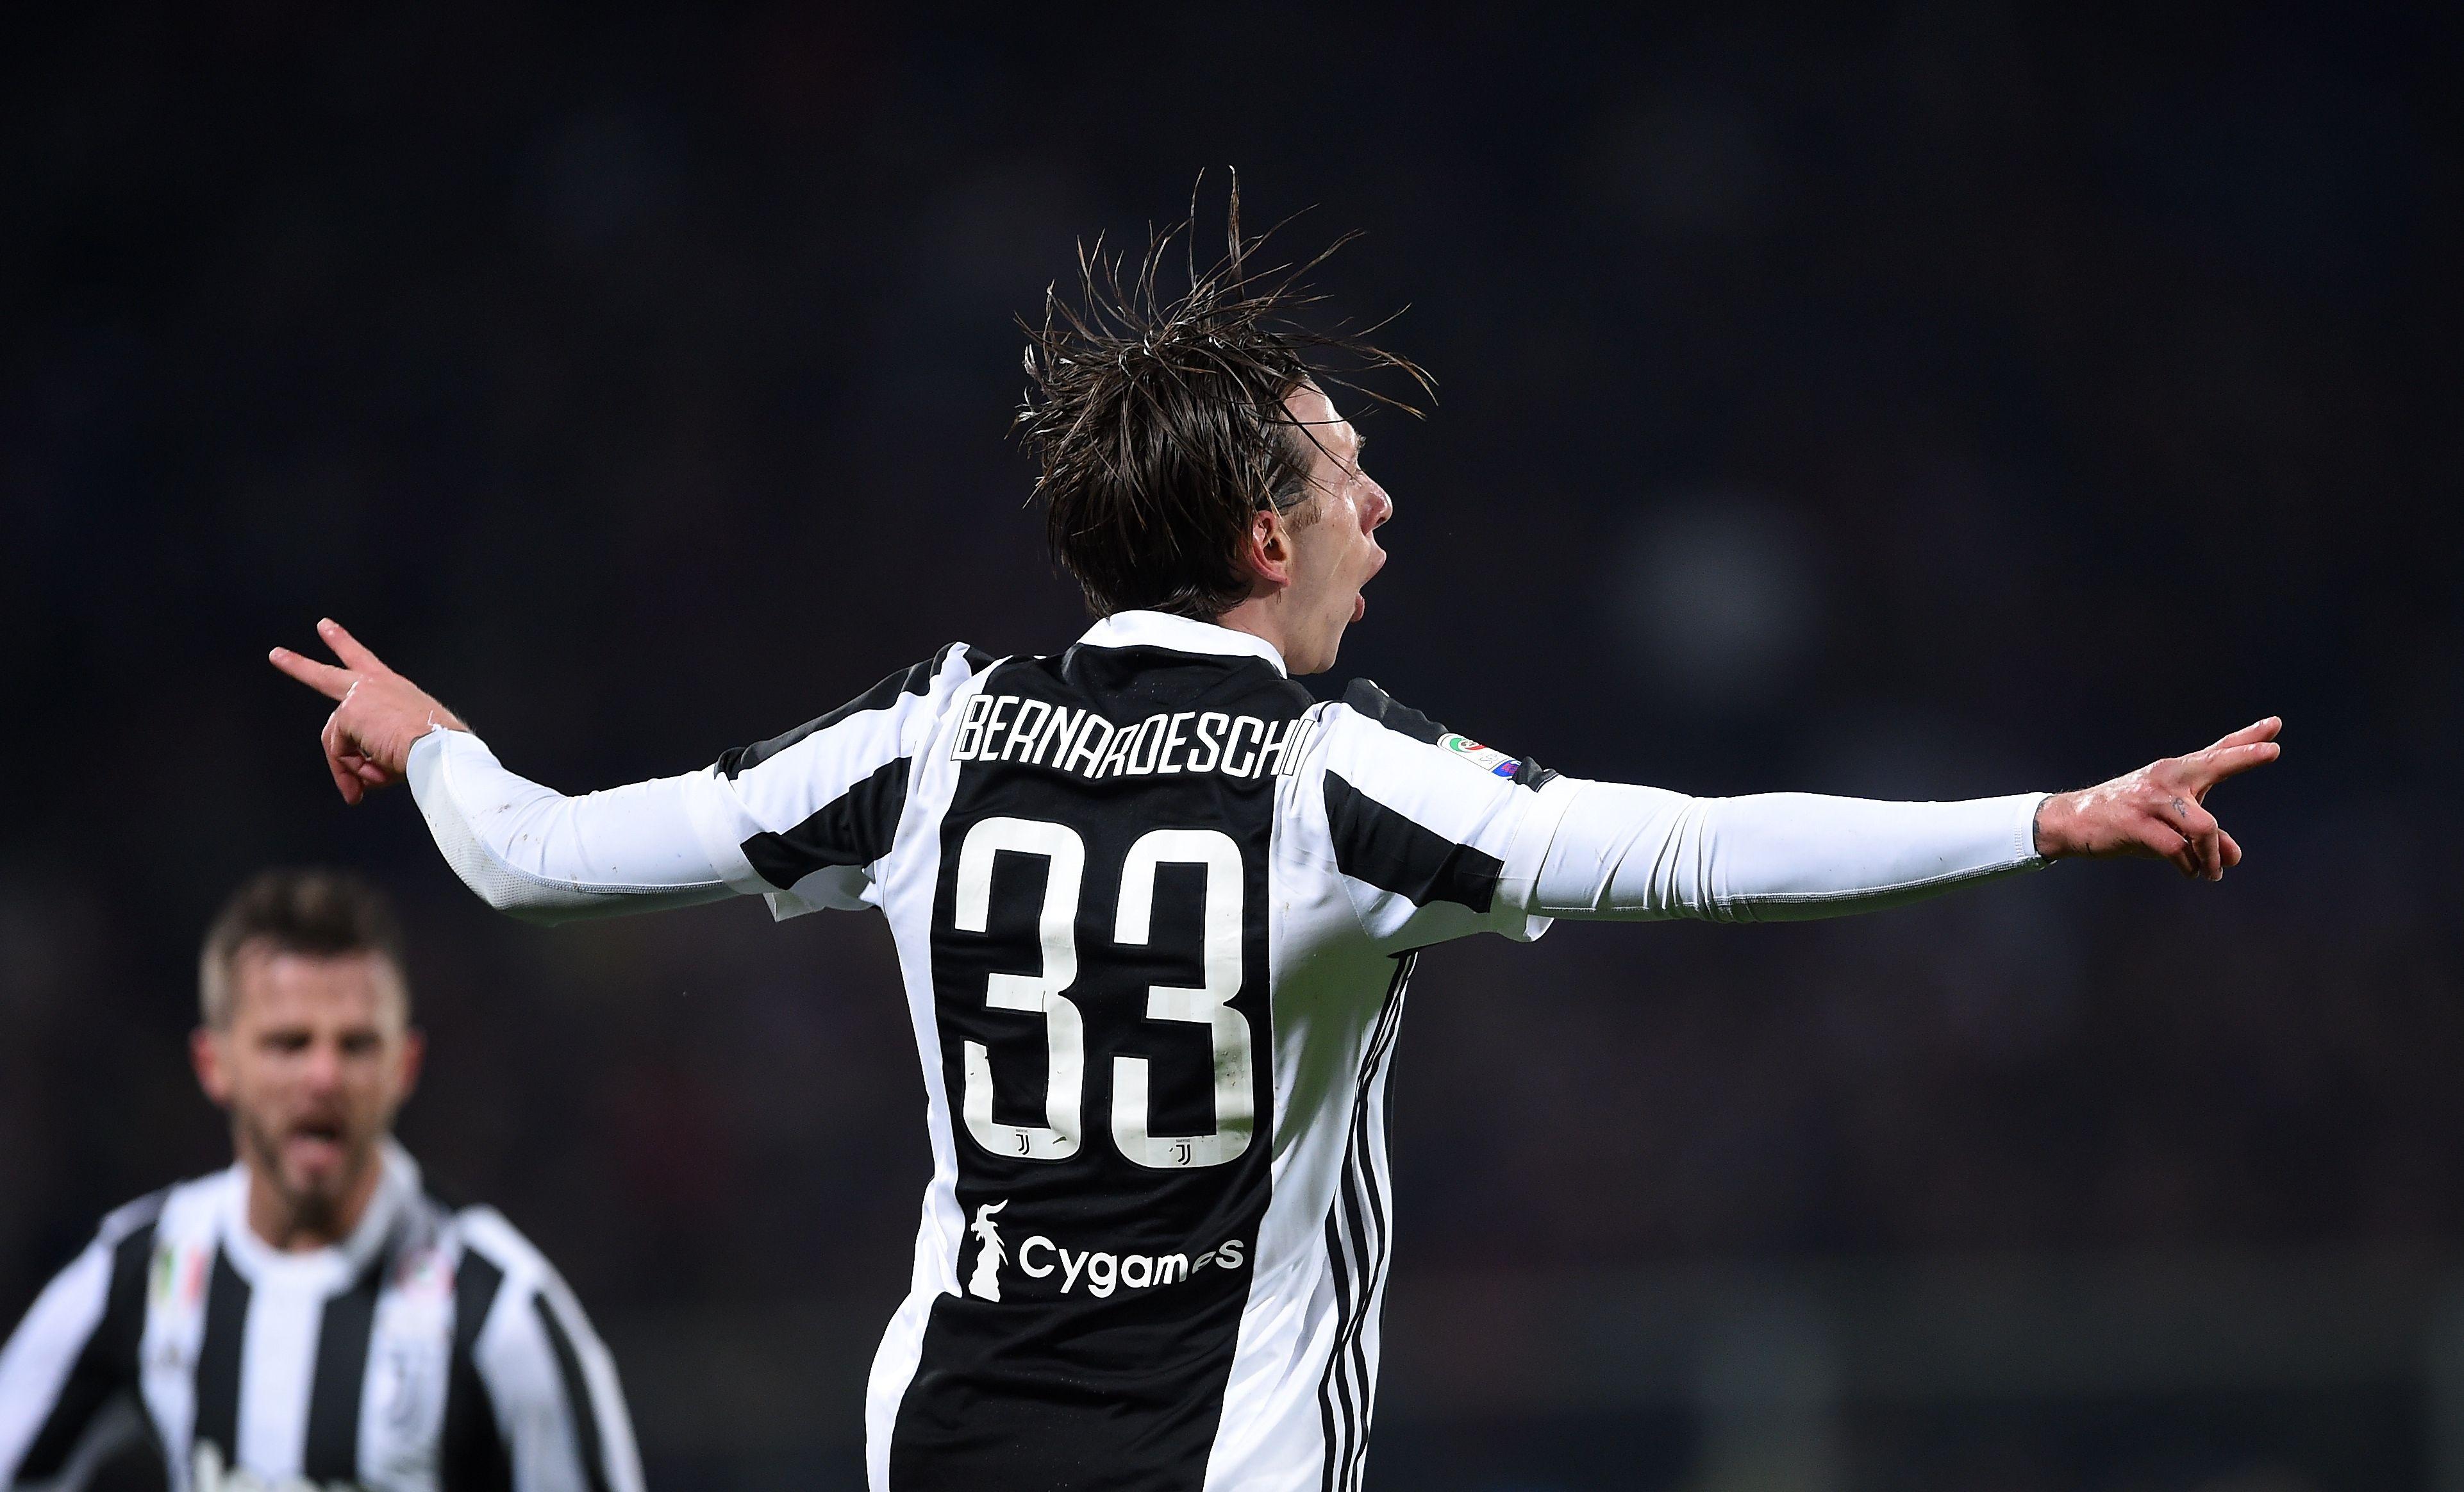 Bernardeschi: “I am a Juventus player and I respect my fans -Juvefc.com